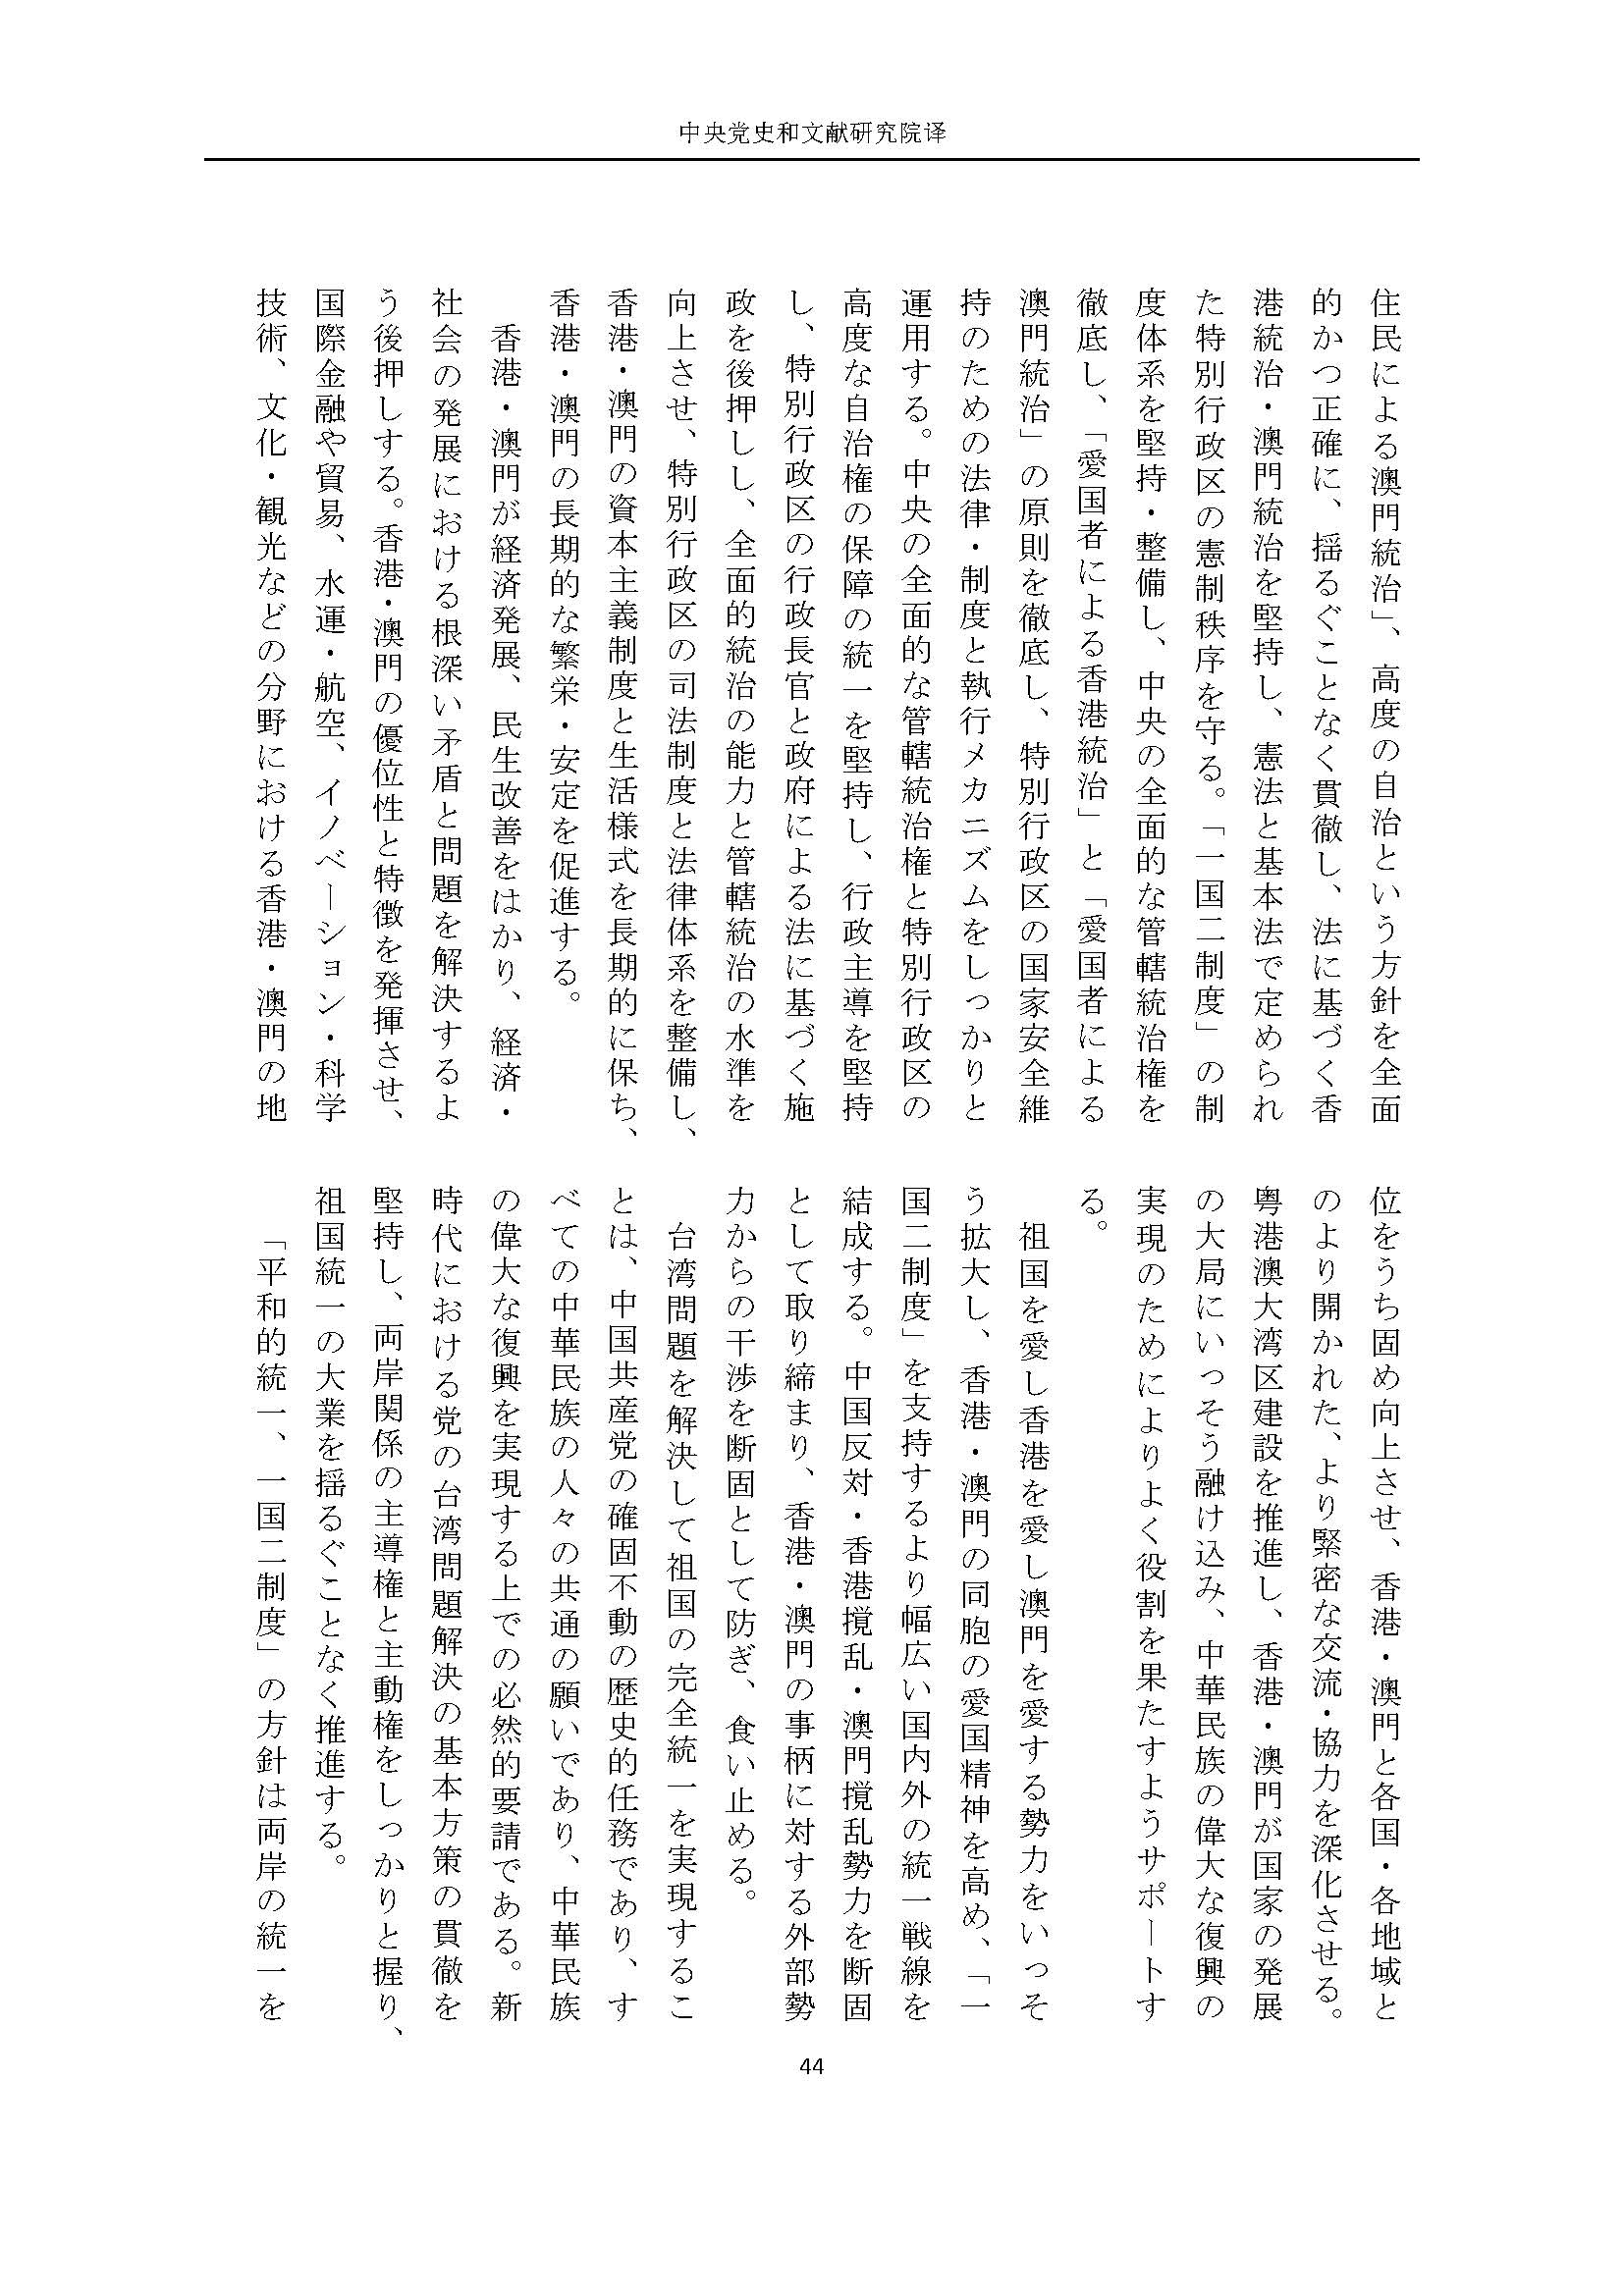 二十大报告（日文全文）_页面_45